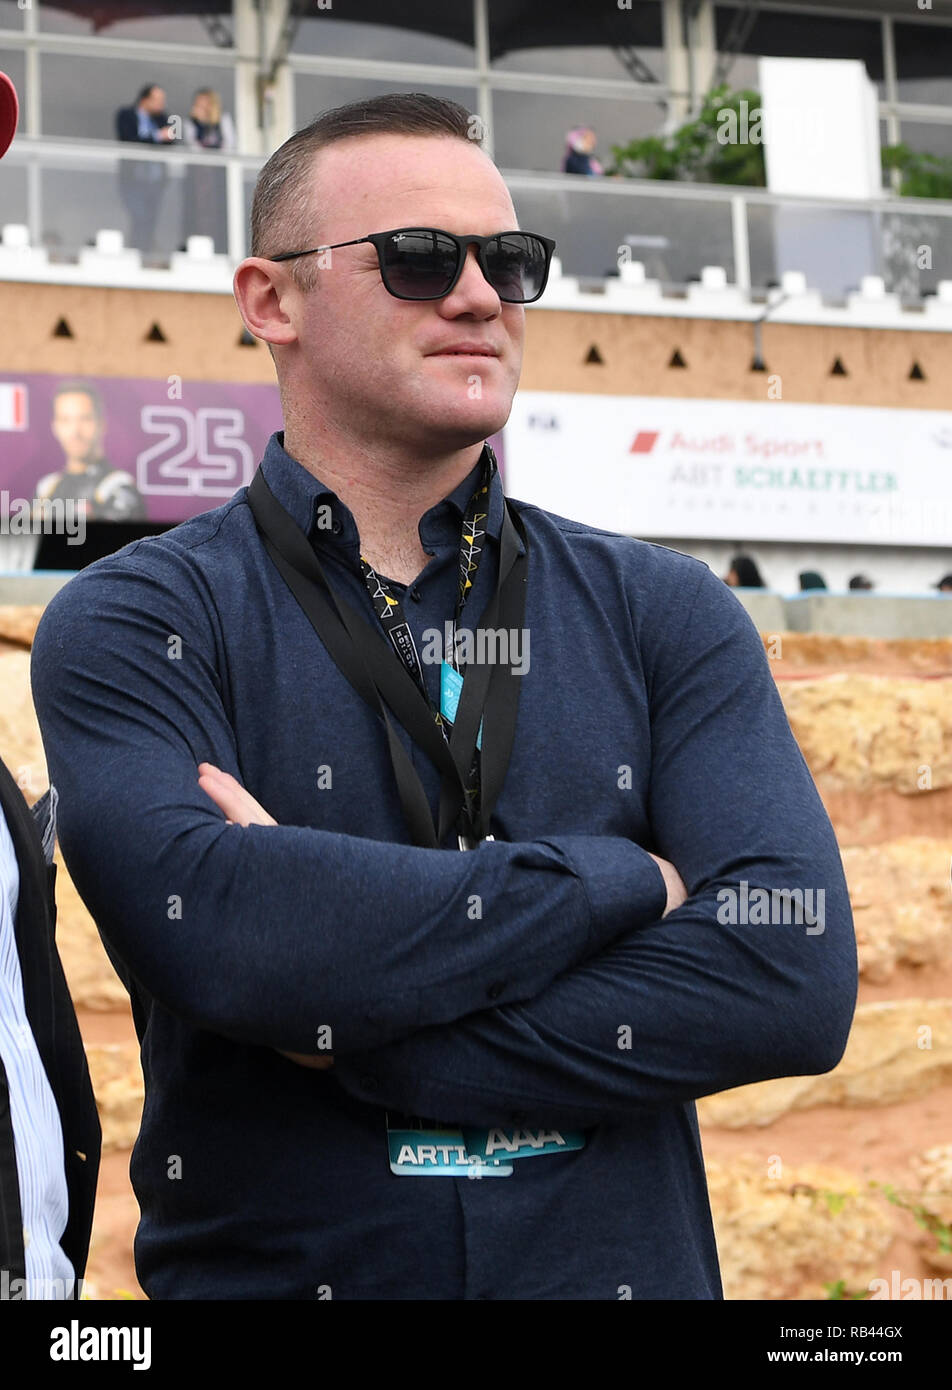 Football star Wayne Rooney lors de la course du championnat de Formule E de Riyad en Arabie Saoudite. Après son vol de retour à l'Amérique il a été accusé d'ivresse en public à l'aéroport aux Etats-Unis Banque D'Images